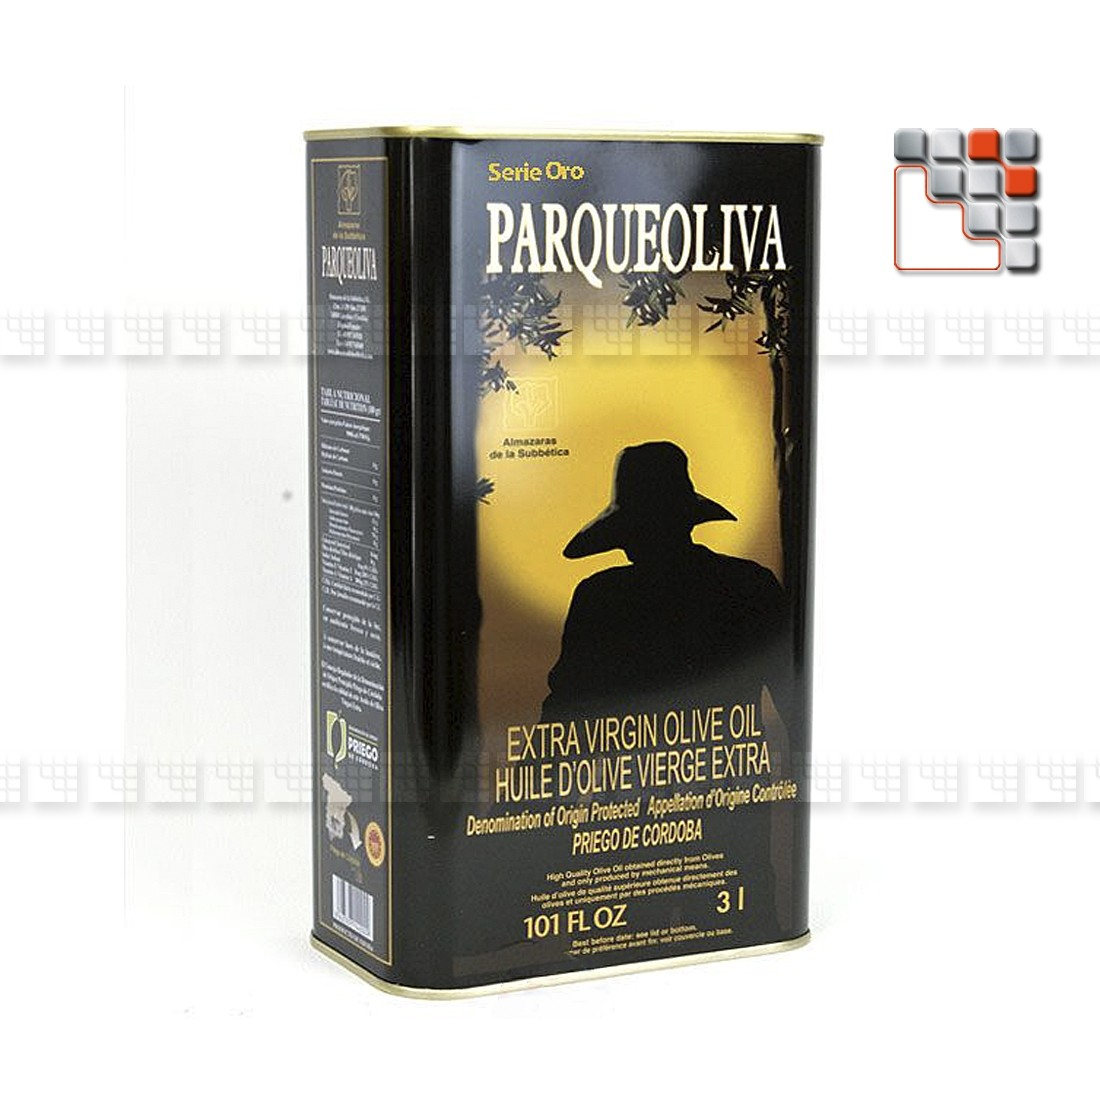 Huile d'Olive Vierge Extra - Parqueoliva Serie Oro A17-PADB5L A la Plancha® Spécialités du Terroir